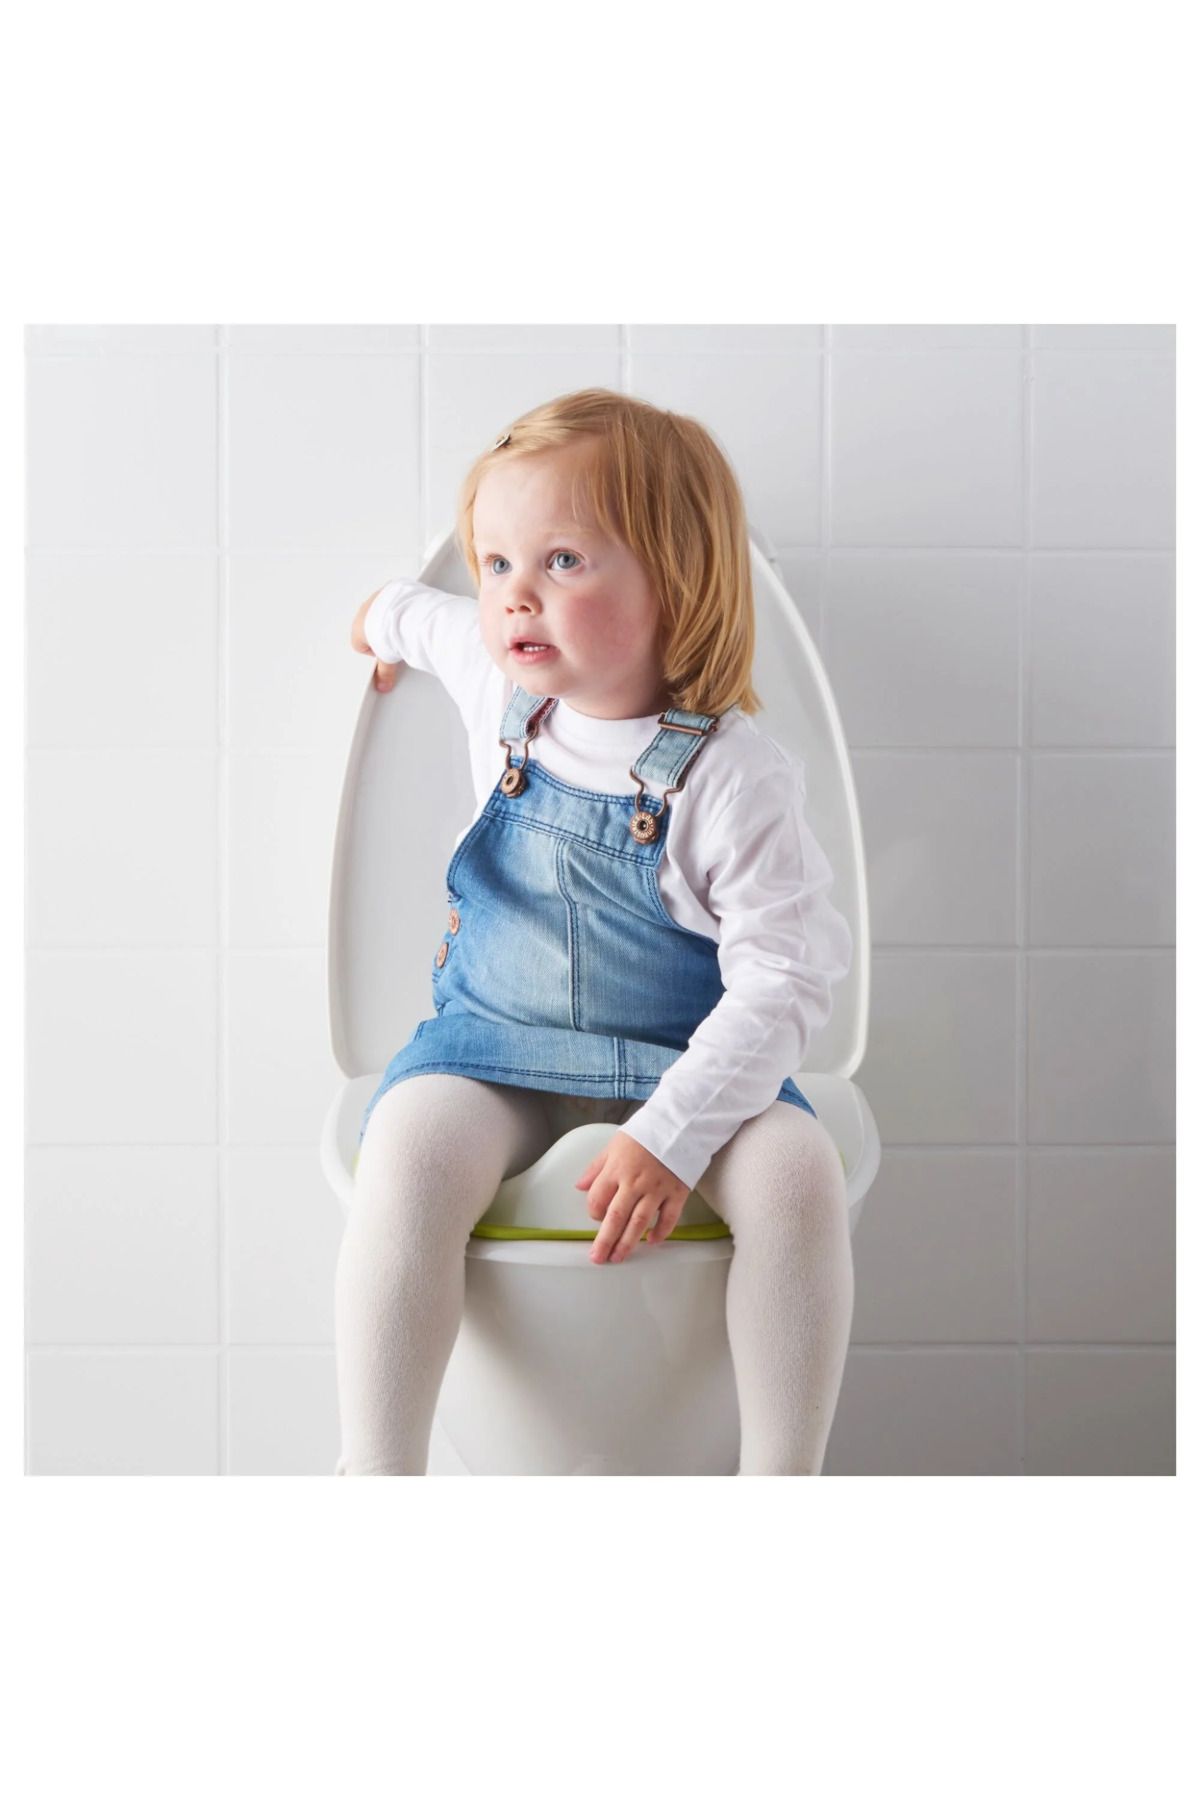 IKEA Çocuk Klozet Adaptörü, Tuvalet Eğitimi Alıştırma Oturağı